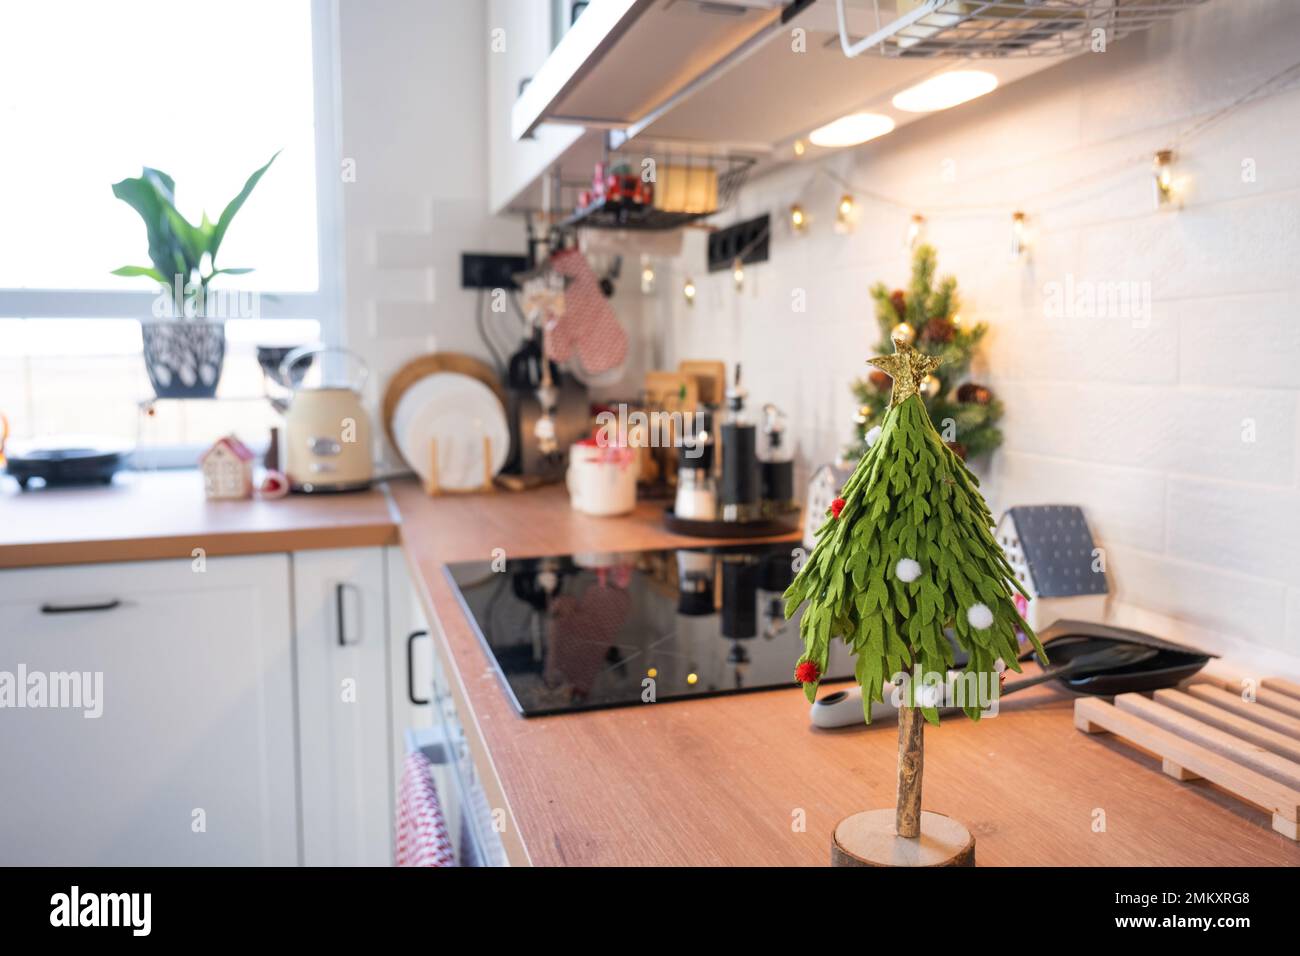 Decorazione della cucina di Natale - preparazione per una vacanza in famiglia, luce fata, albero di Natale, ornamento rosso, cervo divertente su armadi, stufa. Umore del celebrato Foto Stock